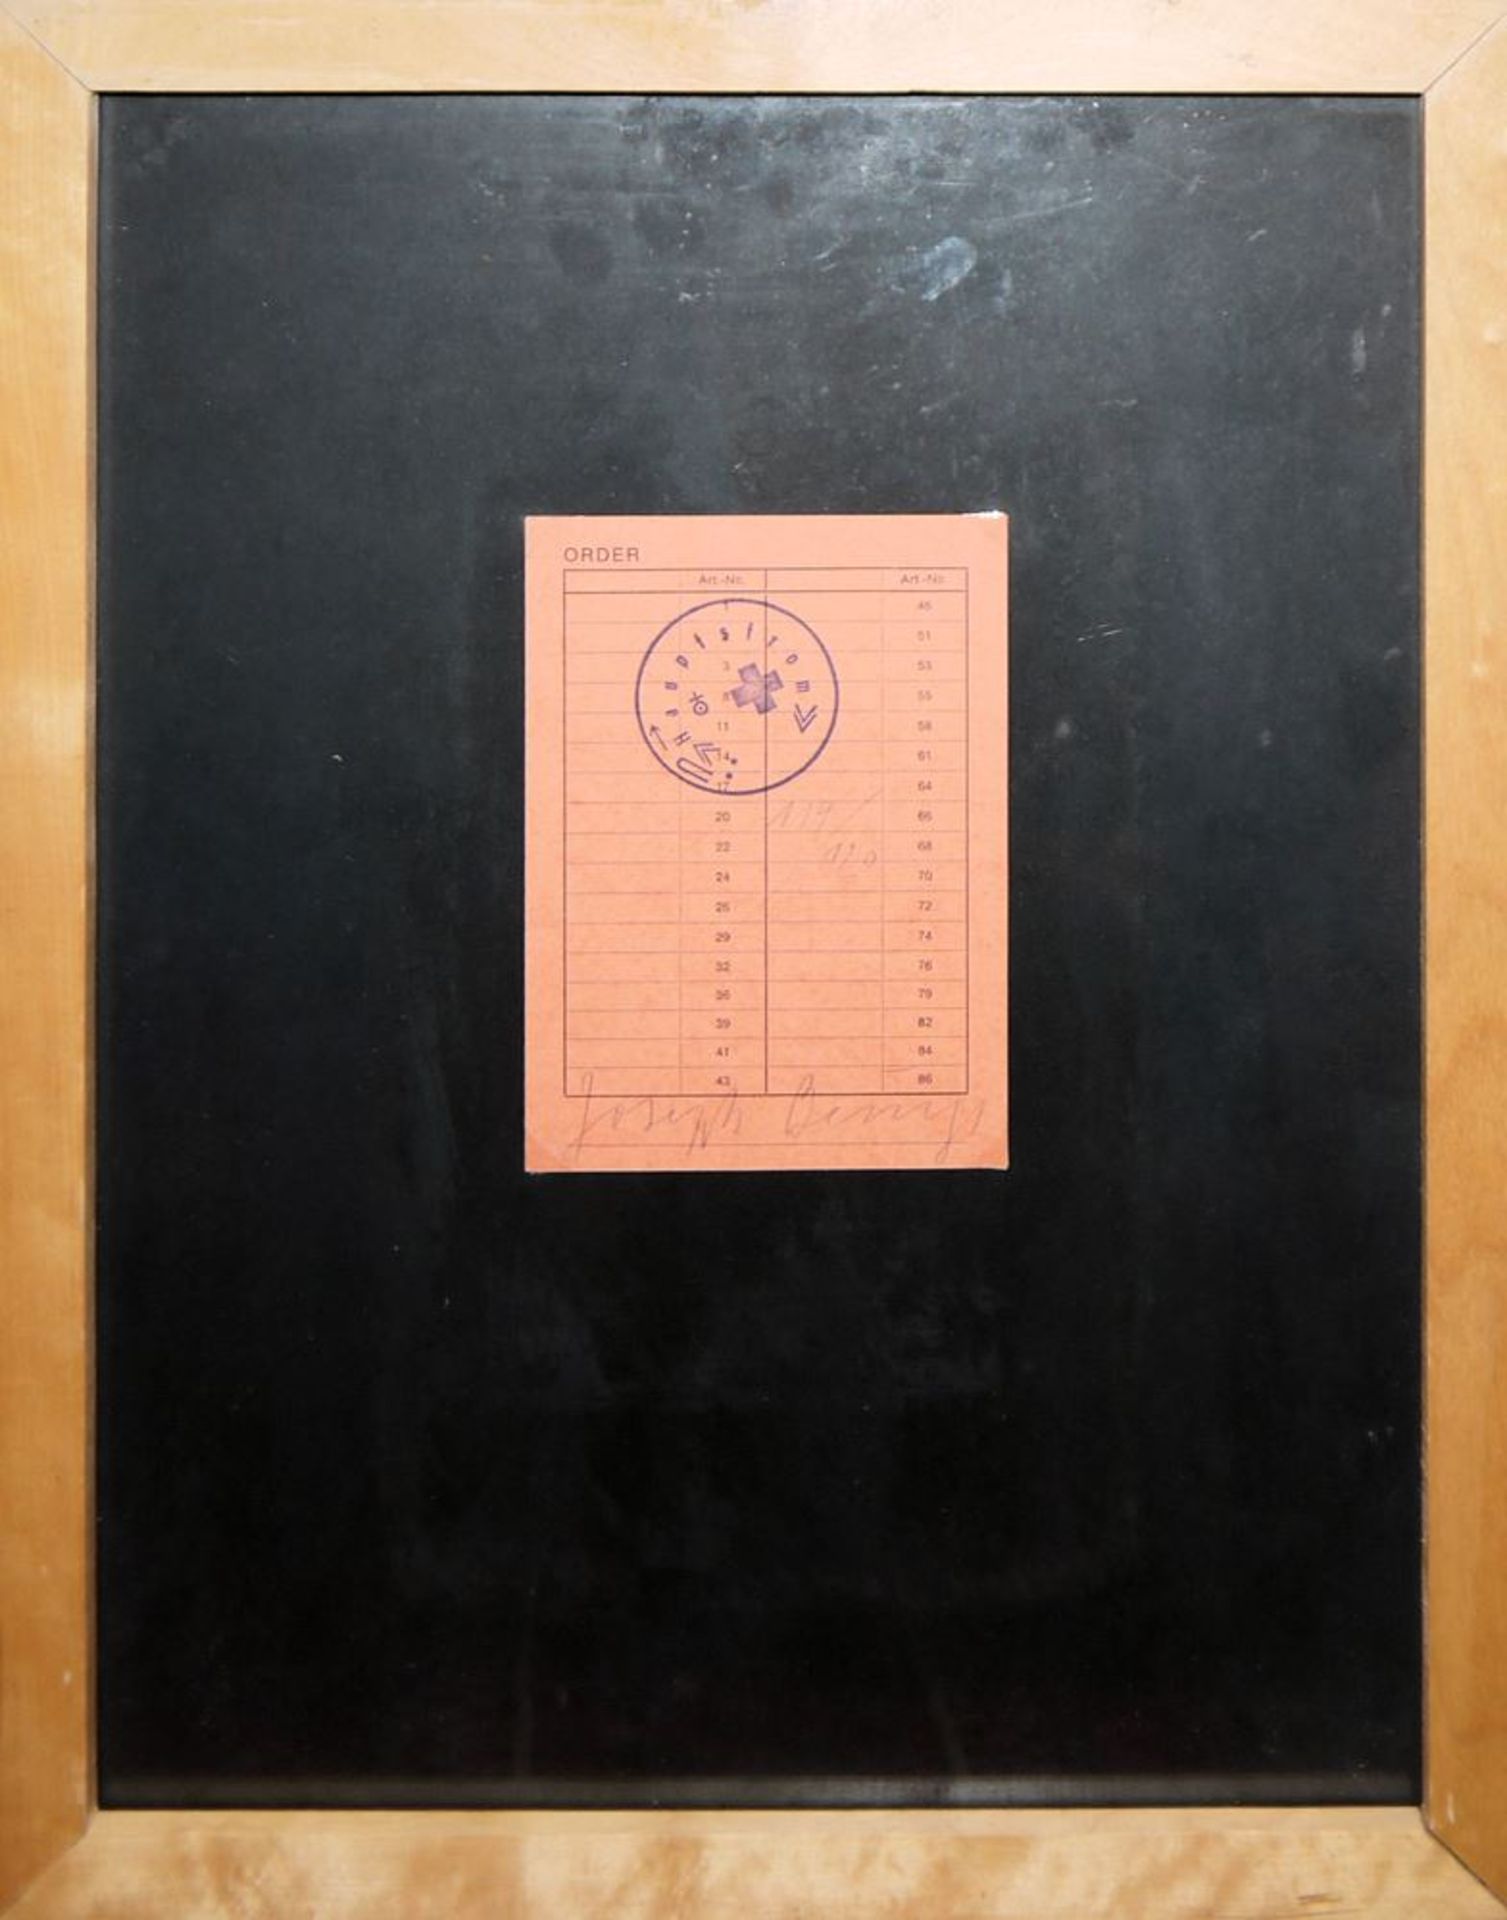 Joseph Beuys, "Order", Bestellkarte, 1973, gestempelt, signiert und nummeriert, gerahmt